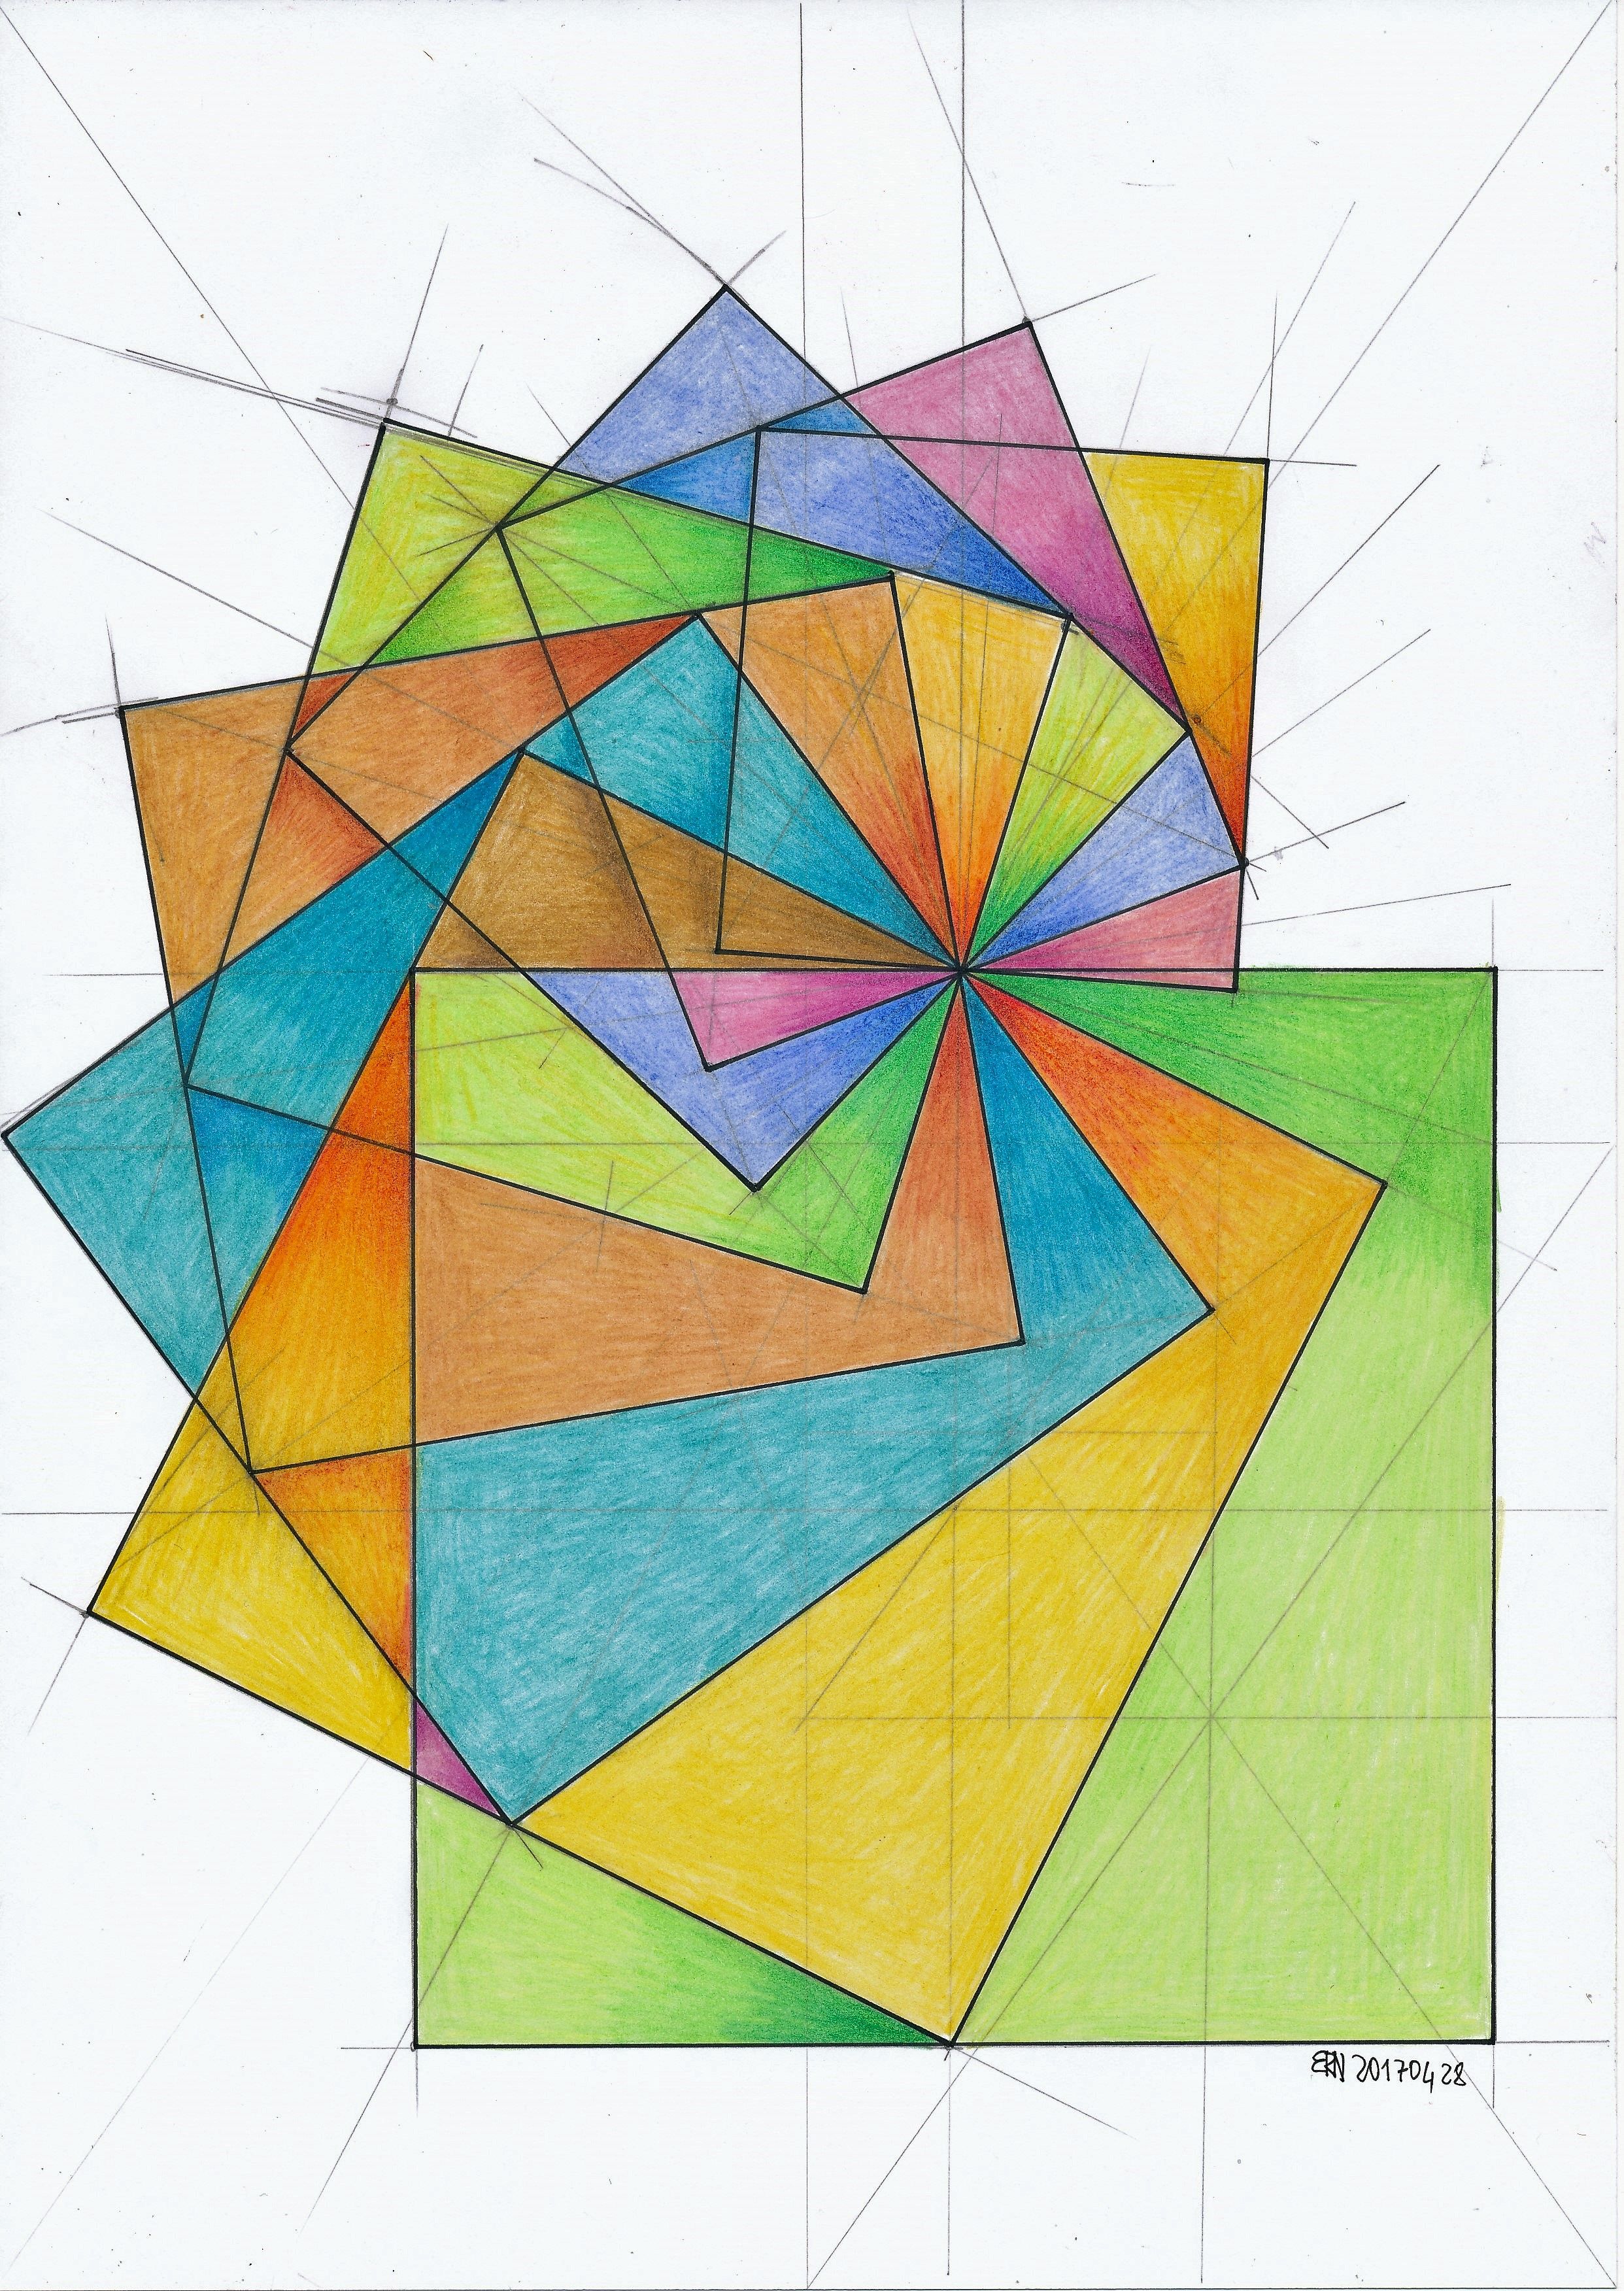 Мозаичный рисунок в квадратиках